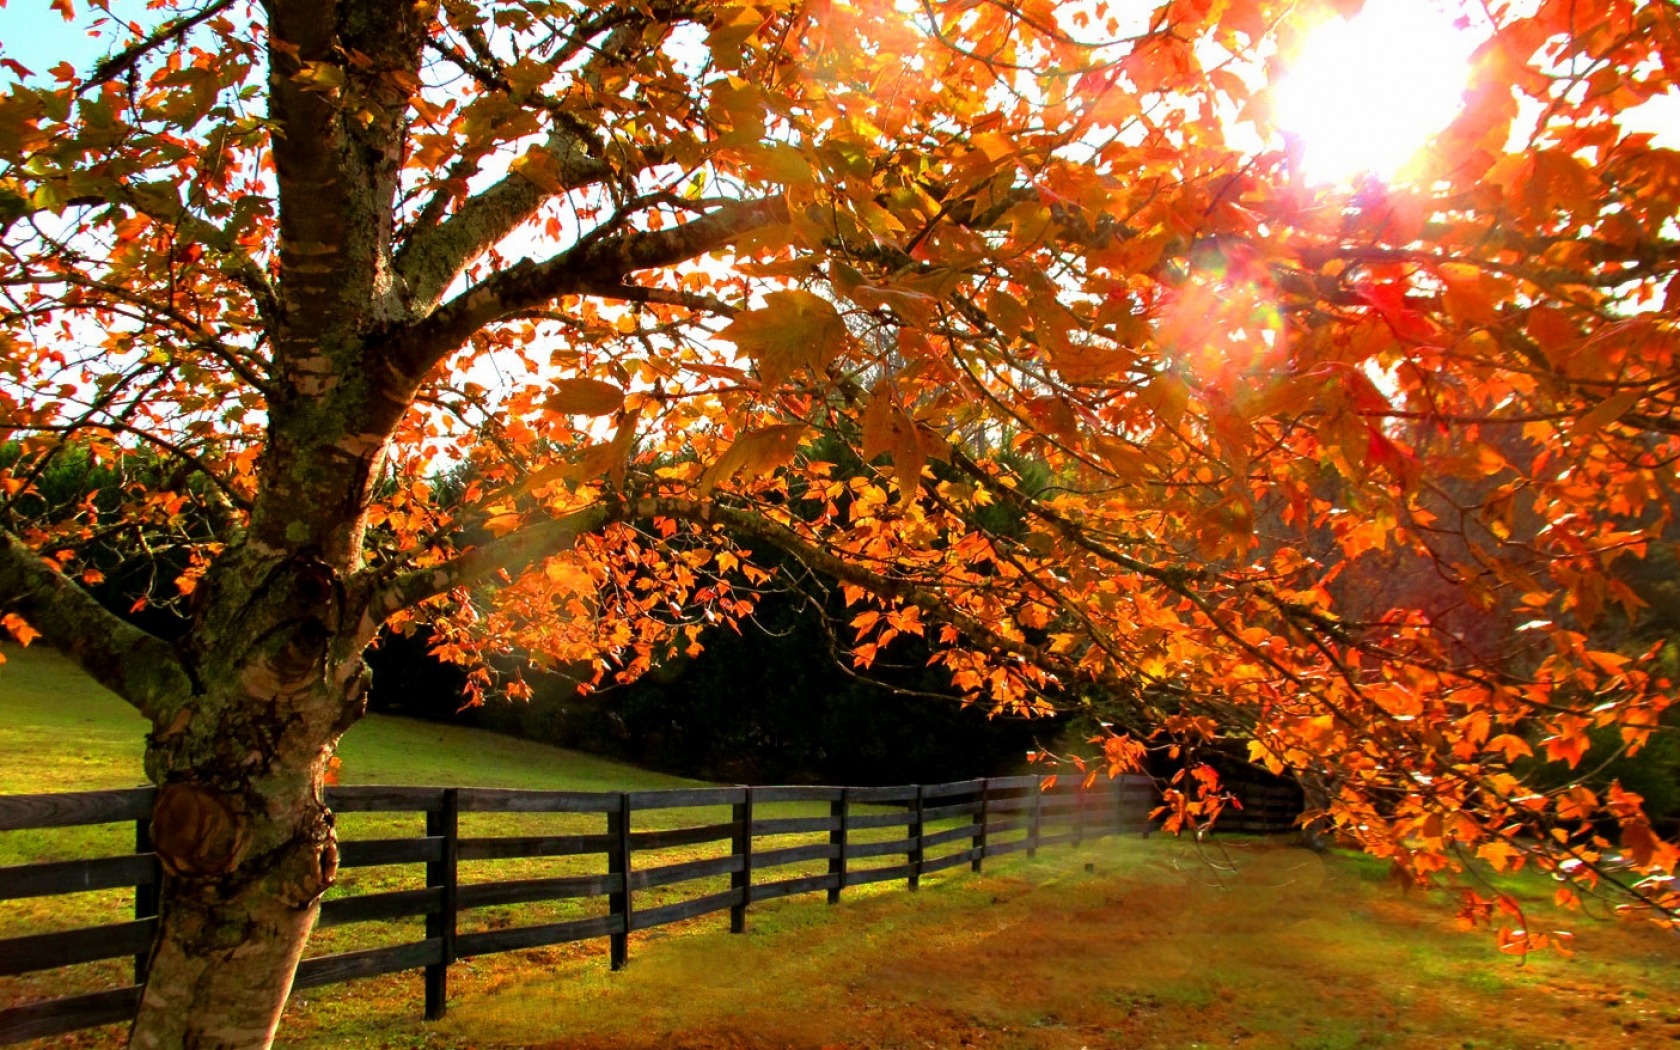 Скачать обои бесплатно Деревья, Осень, Дерево, Поле, Ограда, Земля/природа картинка на рабочий стол ПК